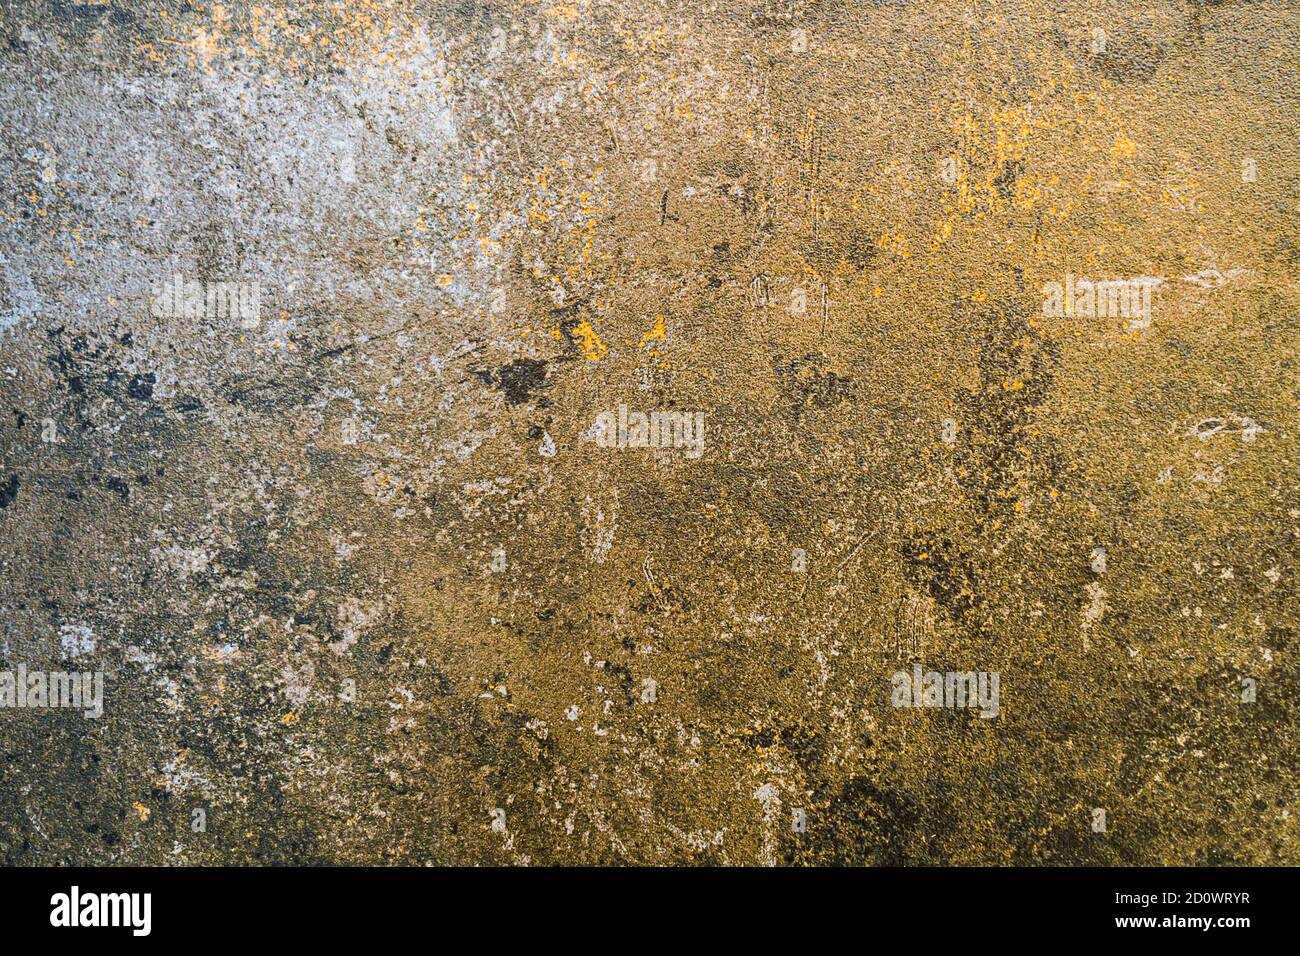 Grunge Marmor Stahl Textur Hintergrund. Splatter-Oberfläche Mit Goldenem Glitzereffekt Stockfoto